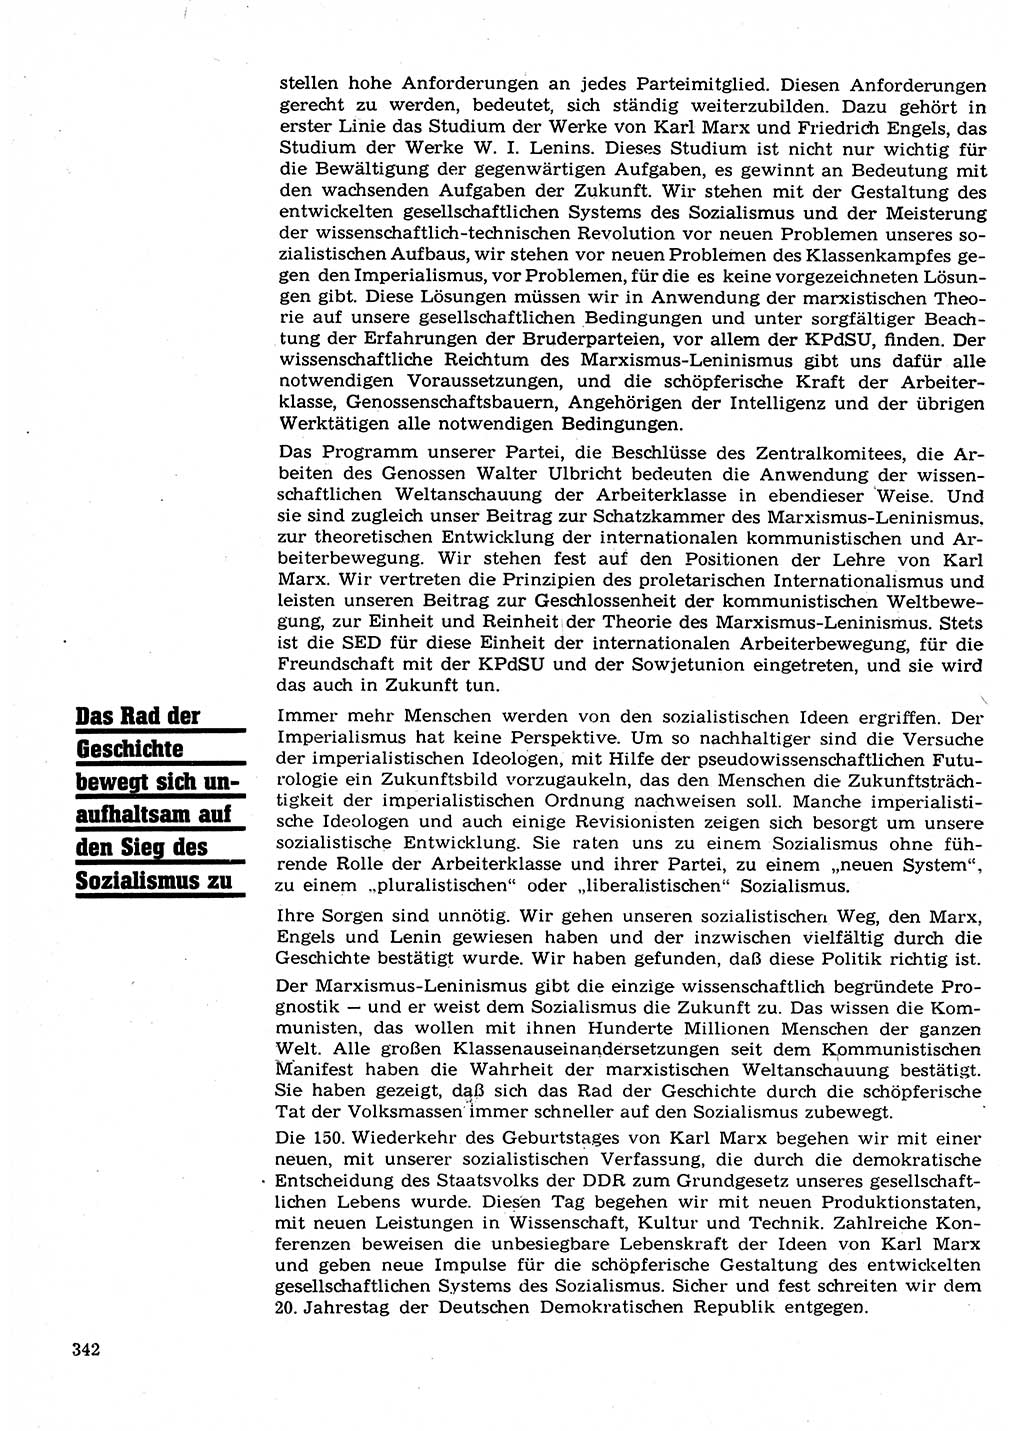 Neuer Weg (NW), Organ des Zentralkomitees (ZK) der SED (Sozialistische Einheitspartei Deutschlands) für Fragen des Parteilebens, 23. Jahrgang [Deutsche Demokratische Republik (DDR)] 1968, Seite 342 (NW ZK SED DDR 1968, S. 342)